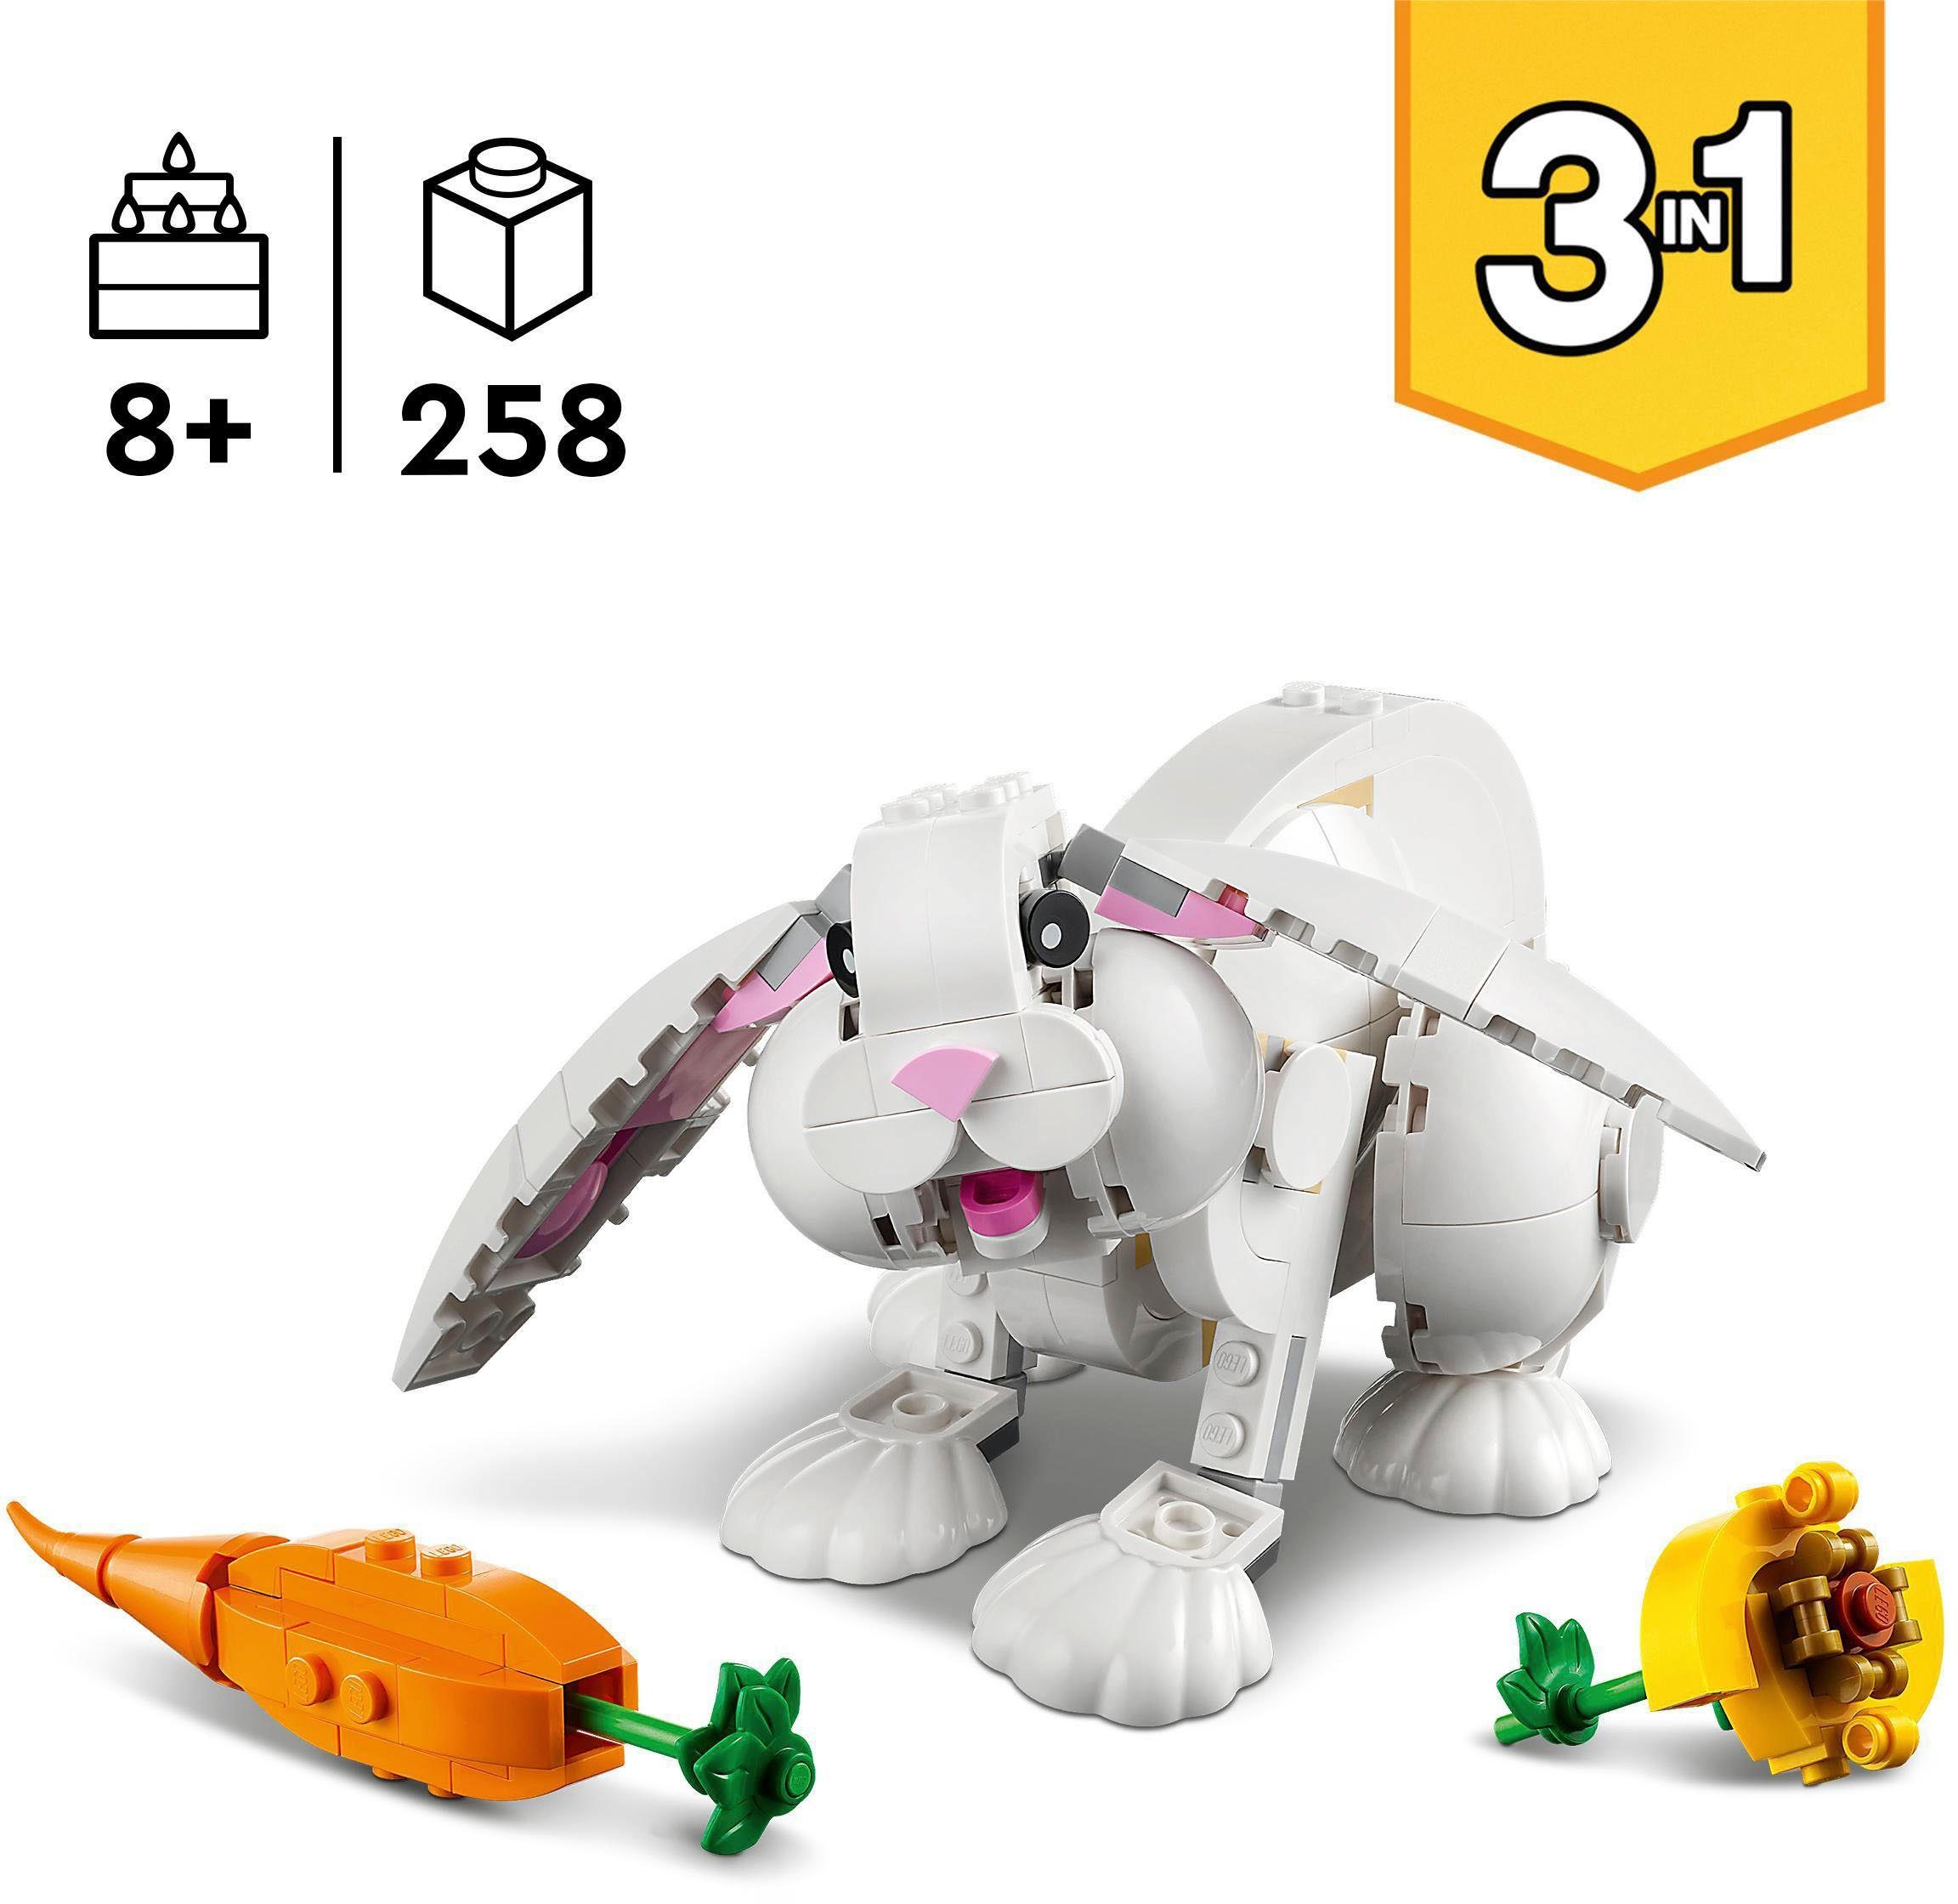 LEGO® Konstruktionsspielsteine Weißer Hase Europe (258 Made St), LEGO® (31133), in 3in1, Creator